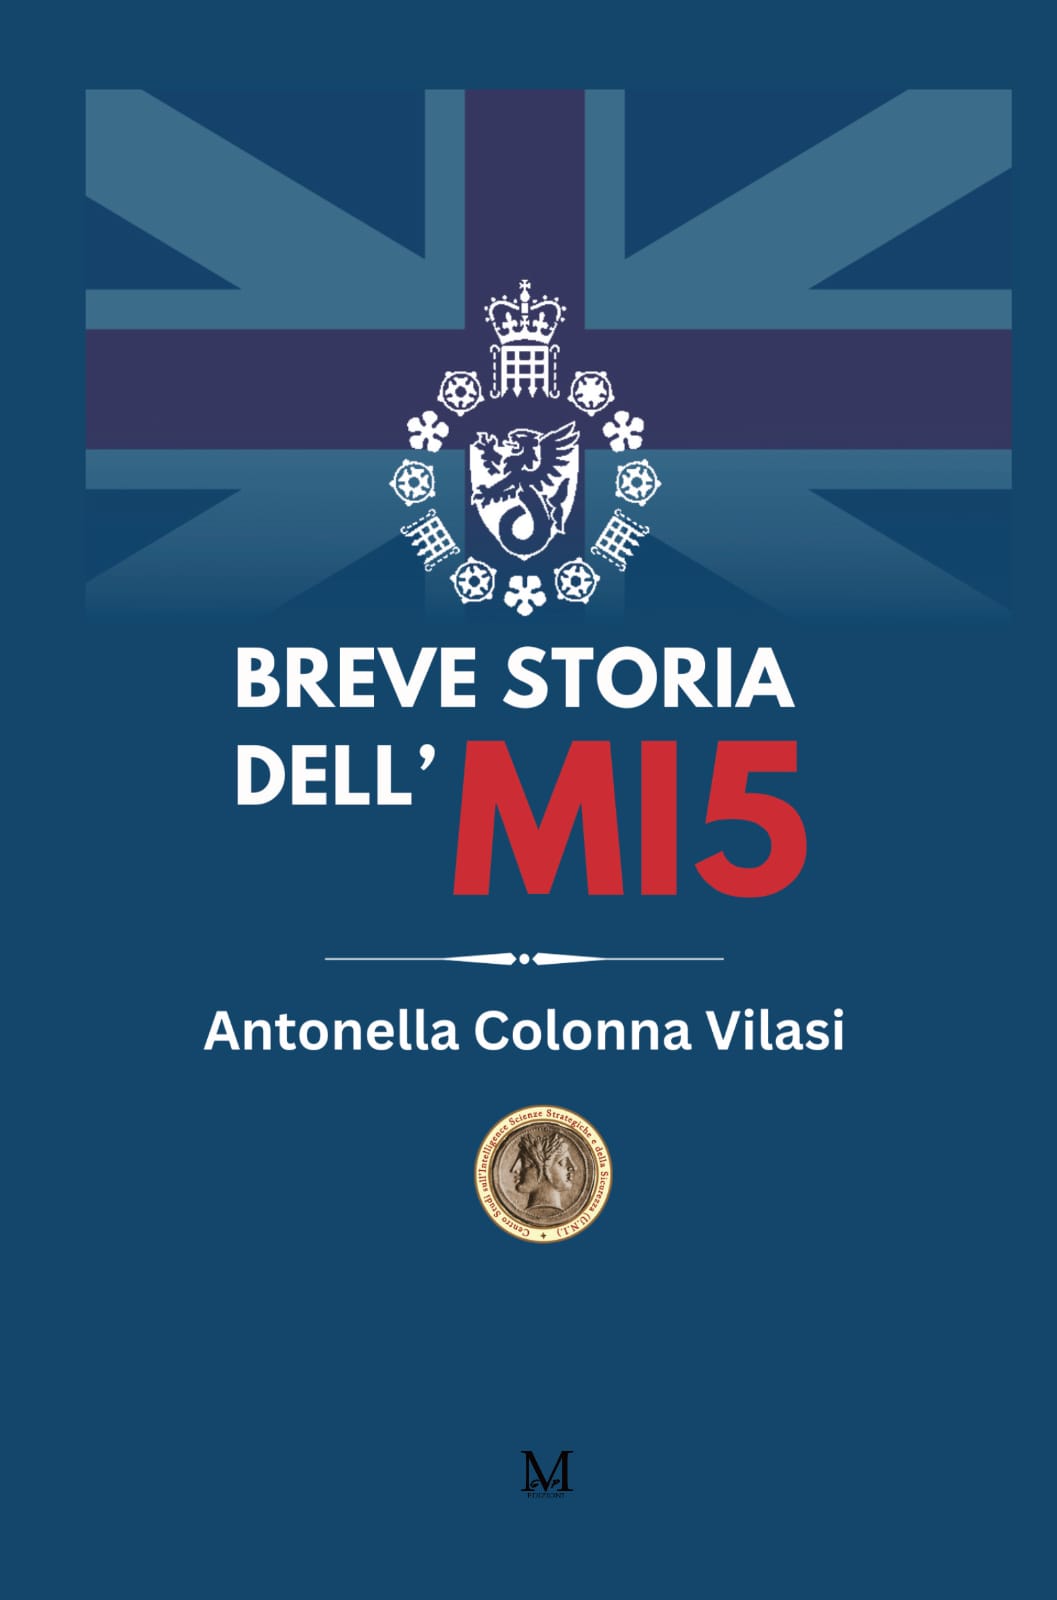 Edizione cartacea del libro Breve storia dell' MI5